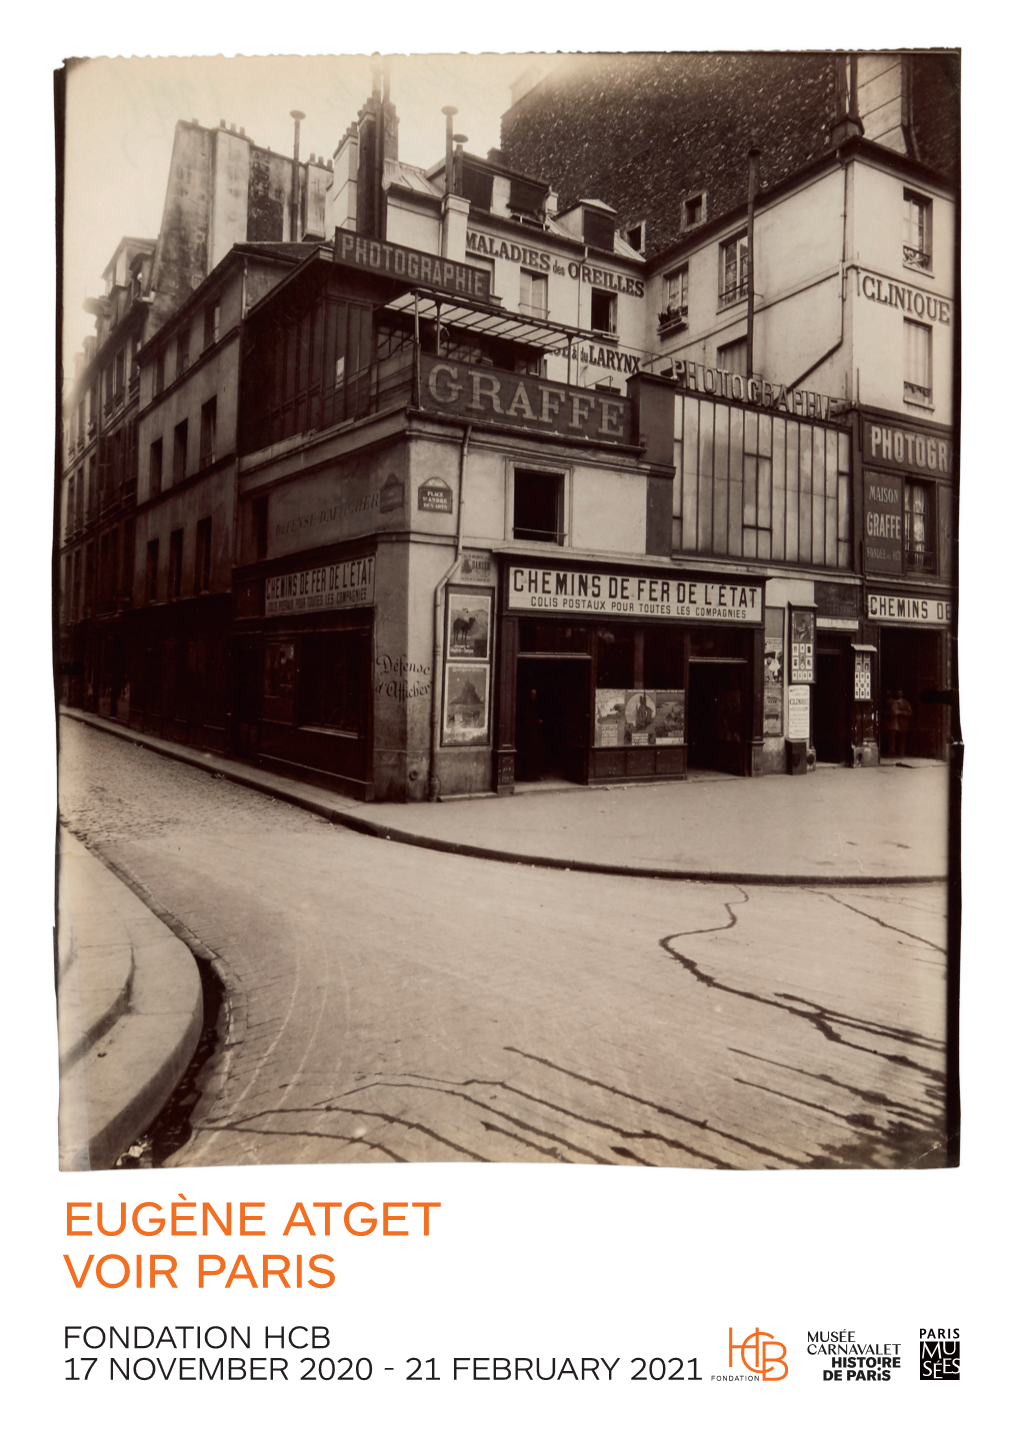 Eugène Atget Voir Paris Fondation Hcb 17 November 2020 - 21 February 2021